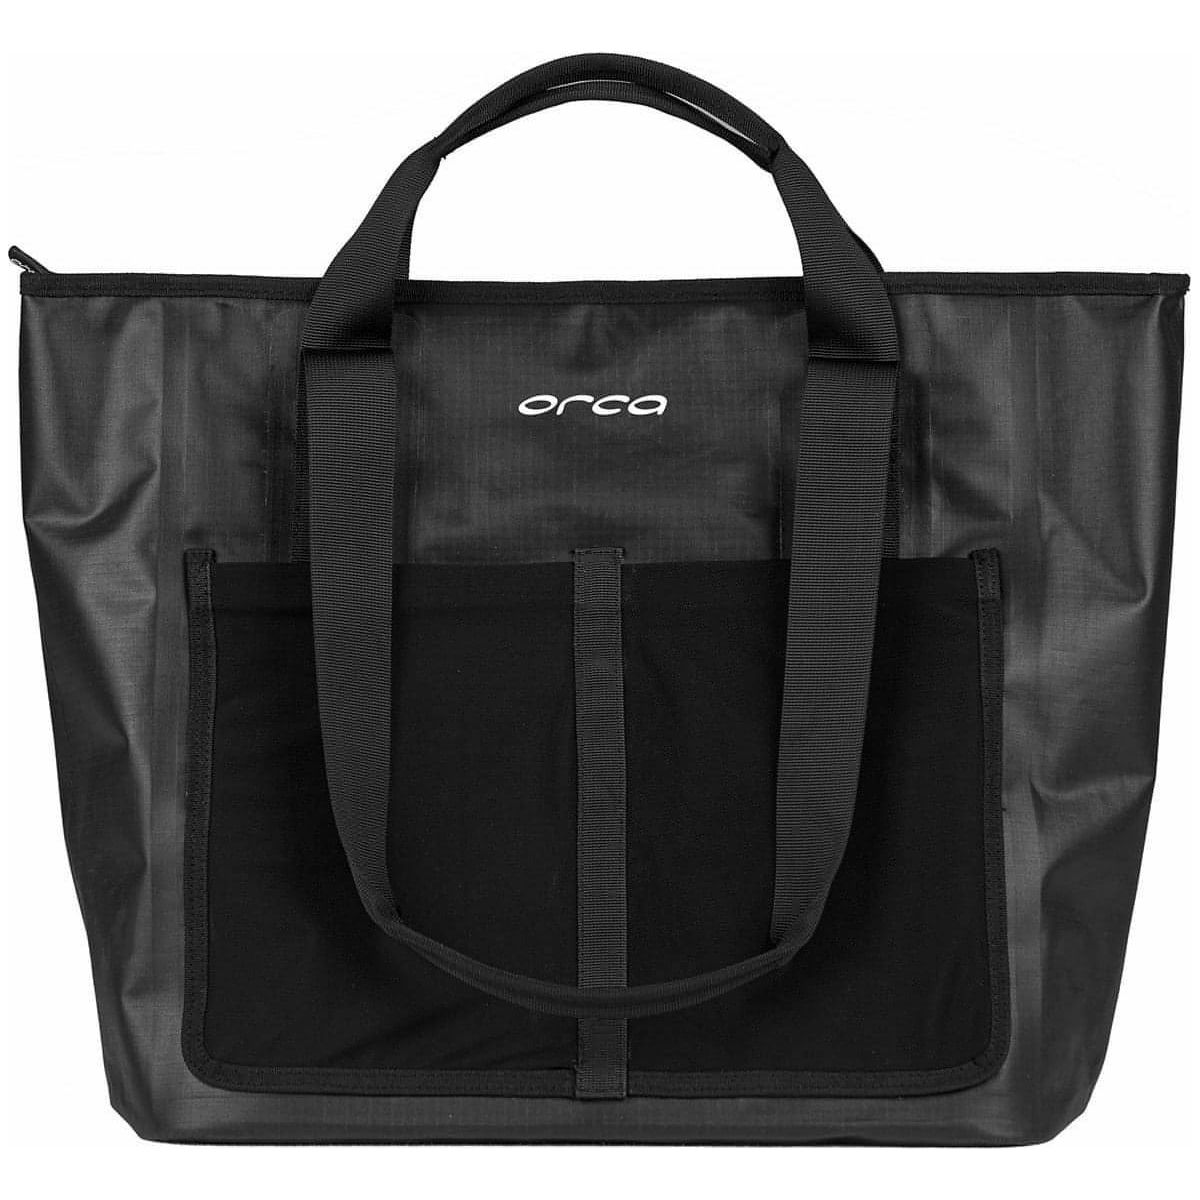 Orca Waterproof Tote Bag - Black 8434446082870 - Start Fitness